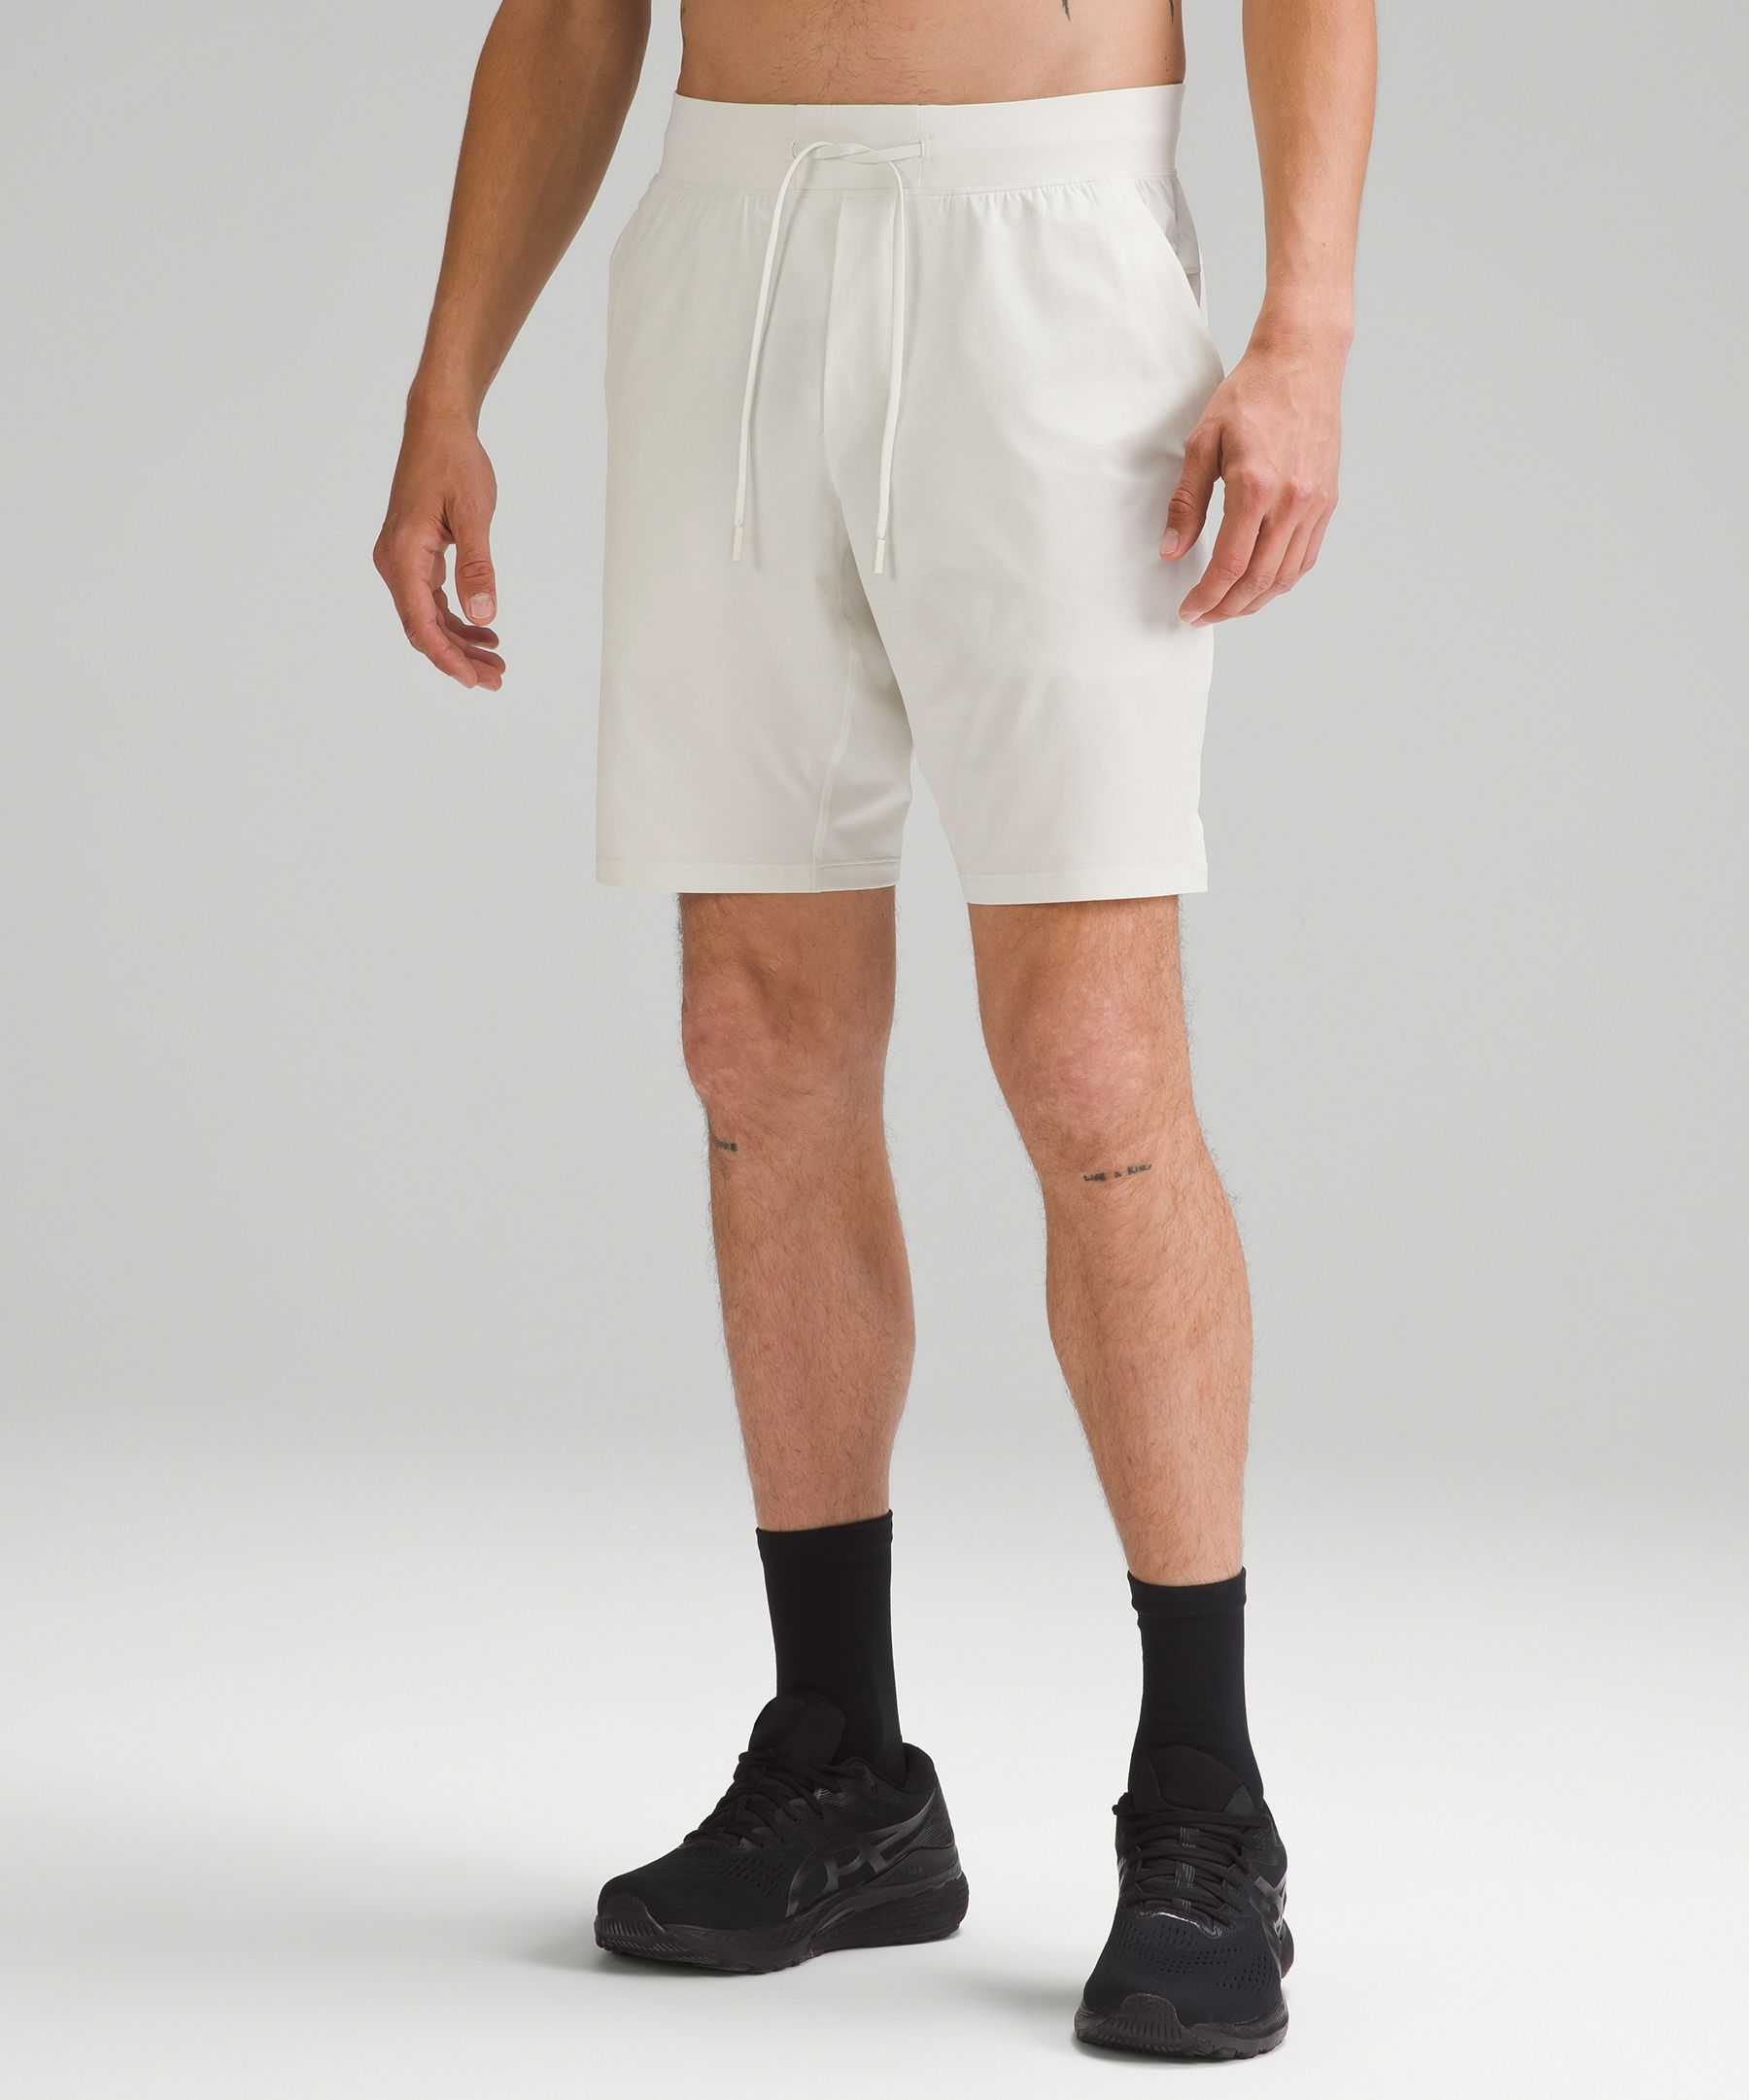 Men's 9 Inch Inseam Shorts